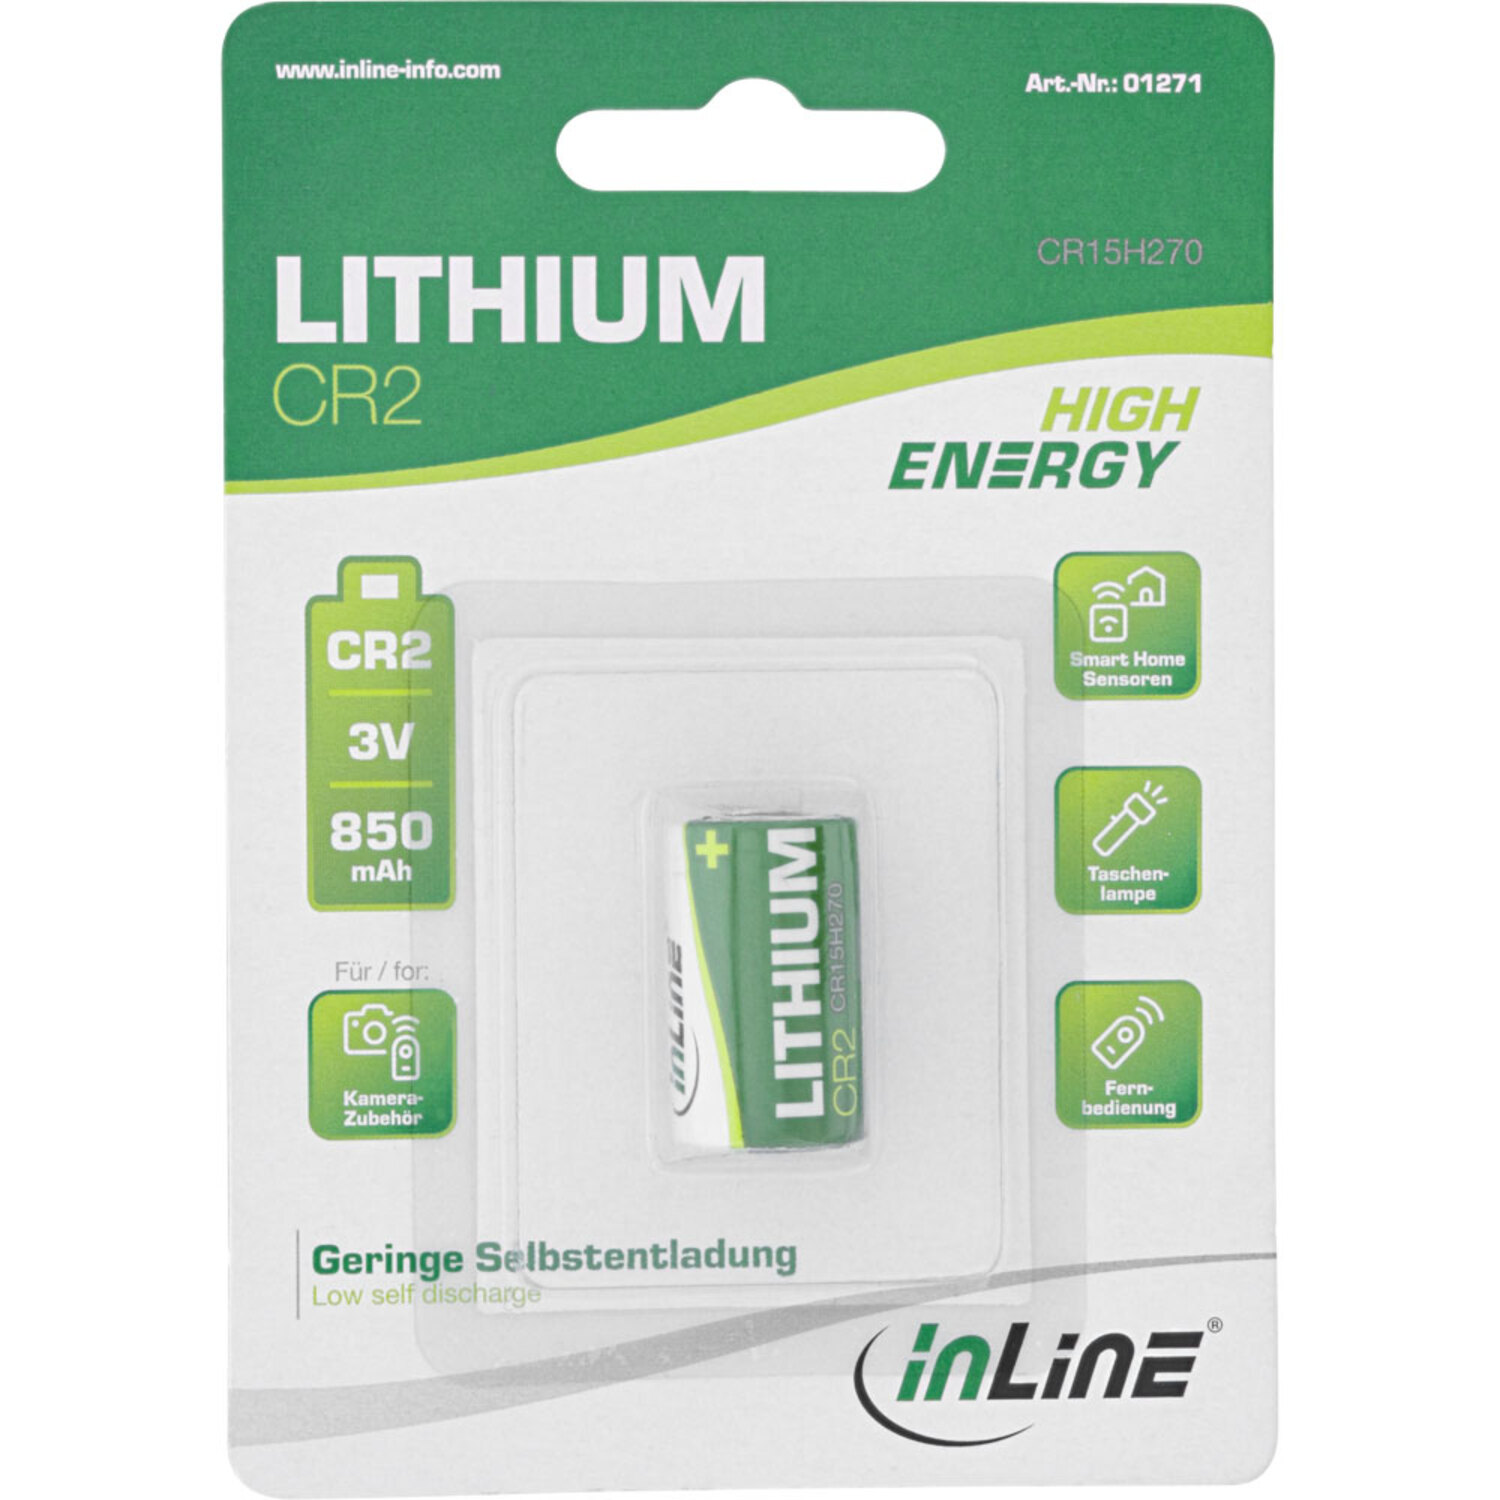 850mAh, Batterie 3V Lithium / Batterien CR2, InLine® Batterien Energy High INLINE Fotobatterie,